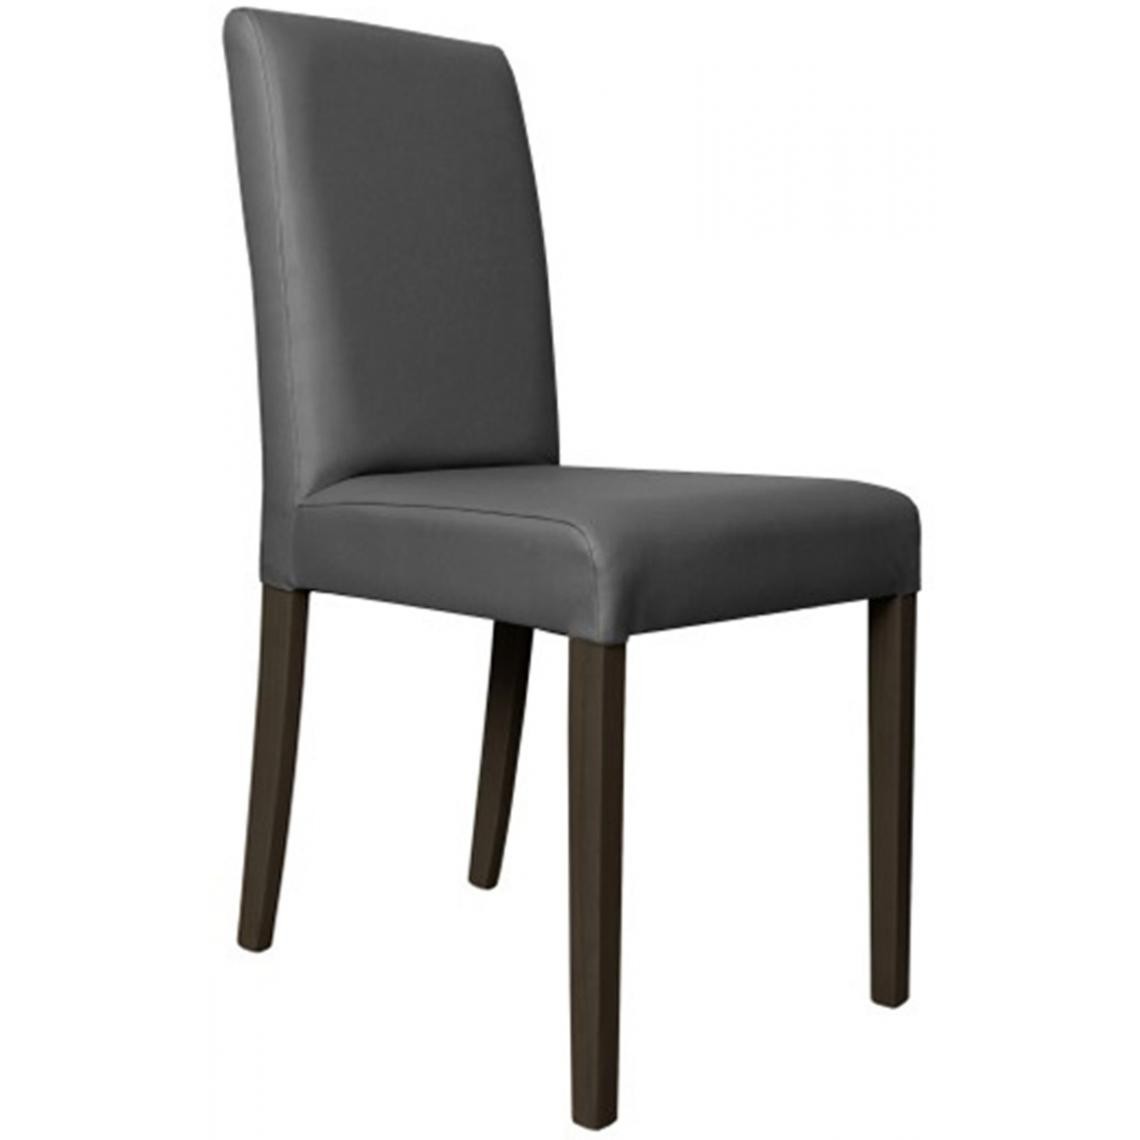 Pegane - Lot de 6 chaises en hêtre et Polyuréthane de couleur grise, Ht950 x Ht Ass500 x L490 x l440 mm - Chaises